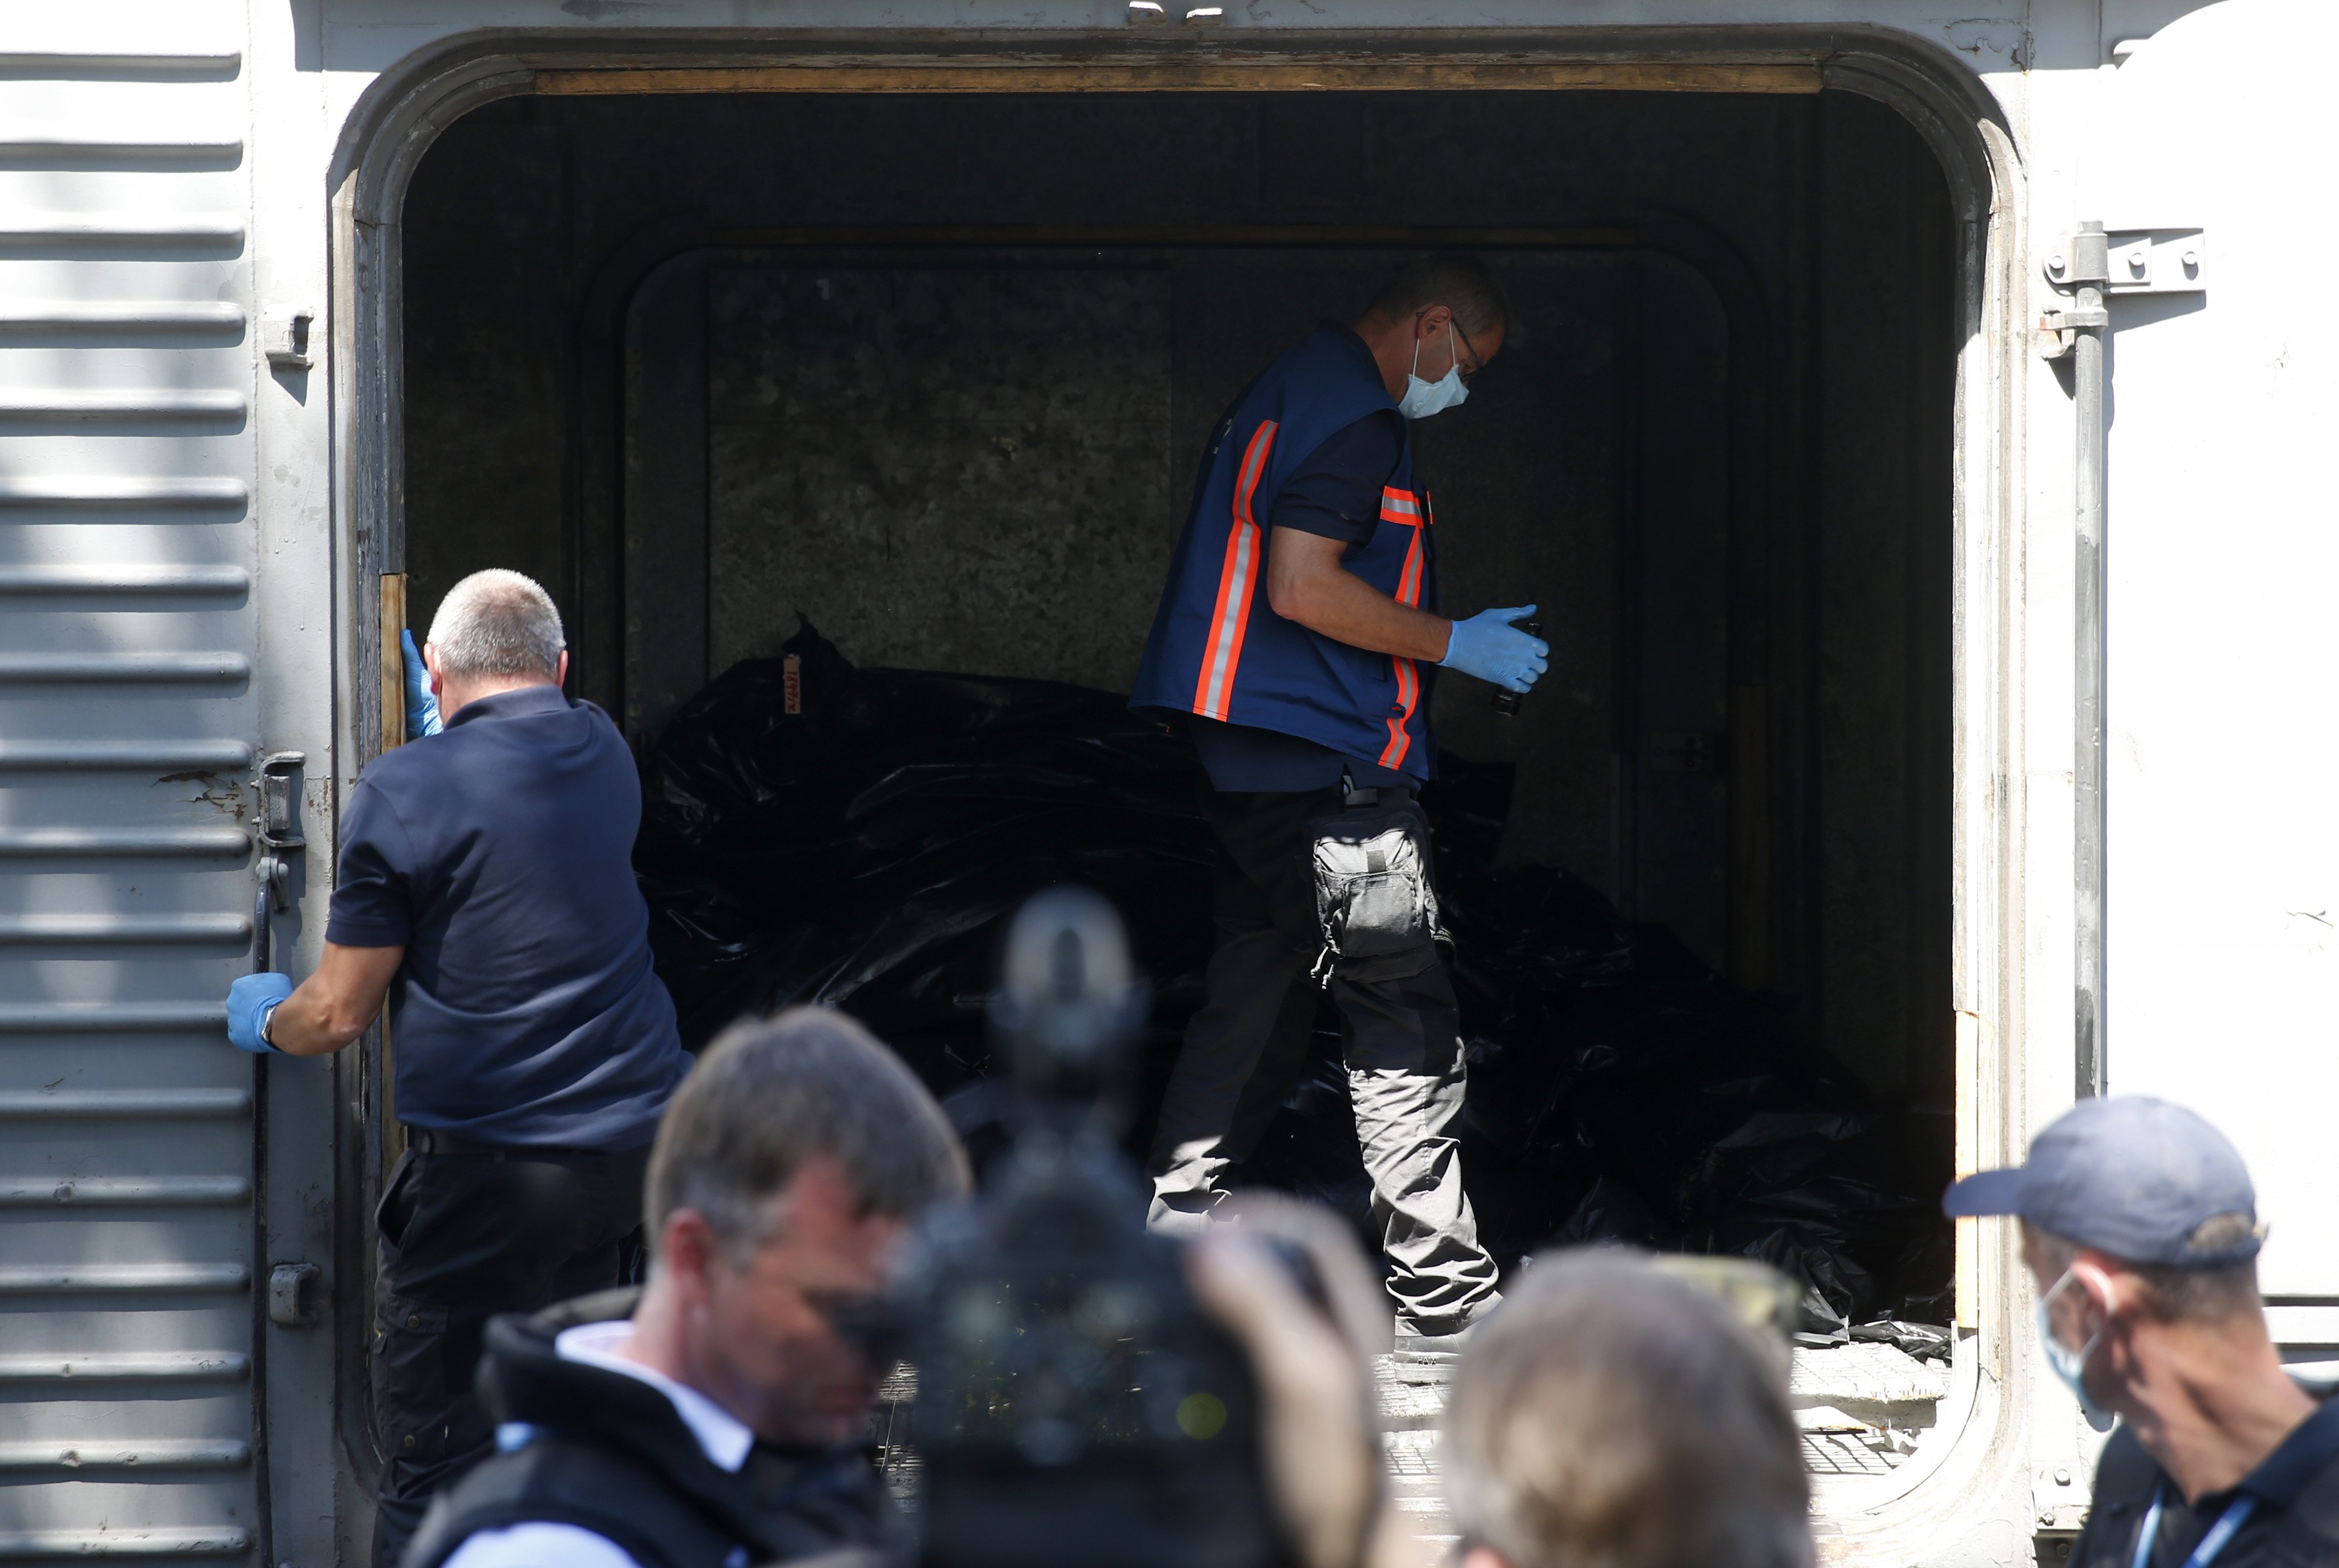 Forenses examinaron el tren con cadáveres del avión derribado en Ucrania (Video)